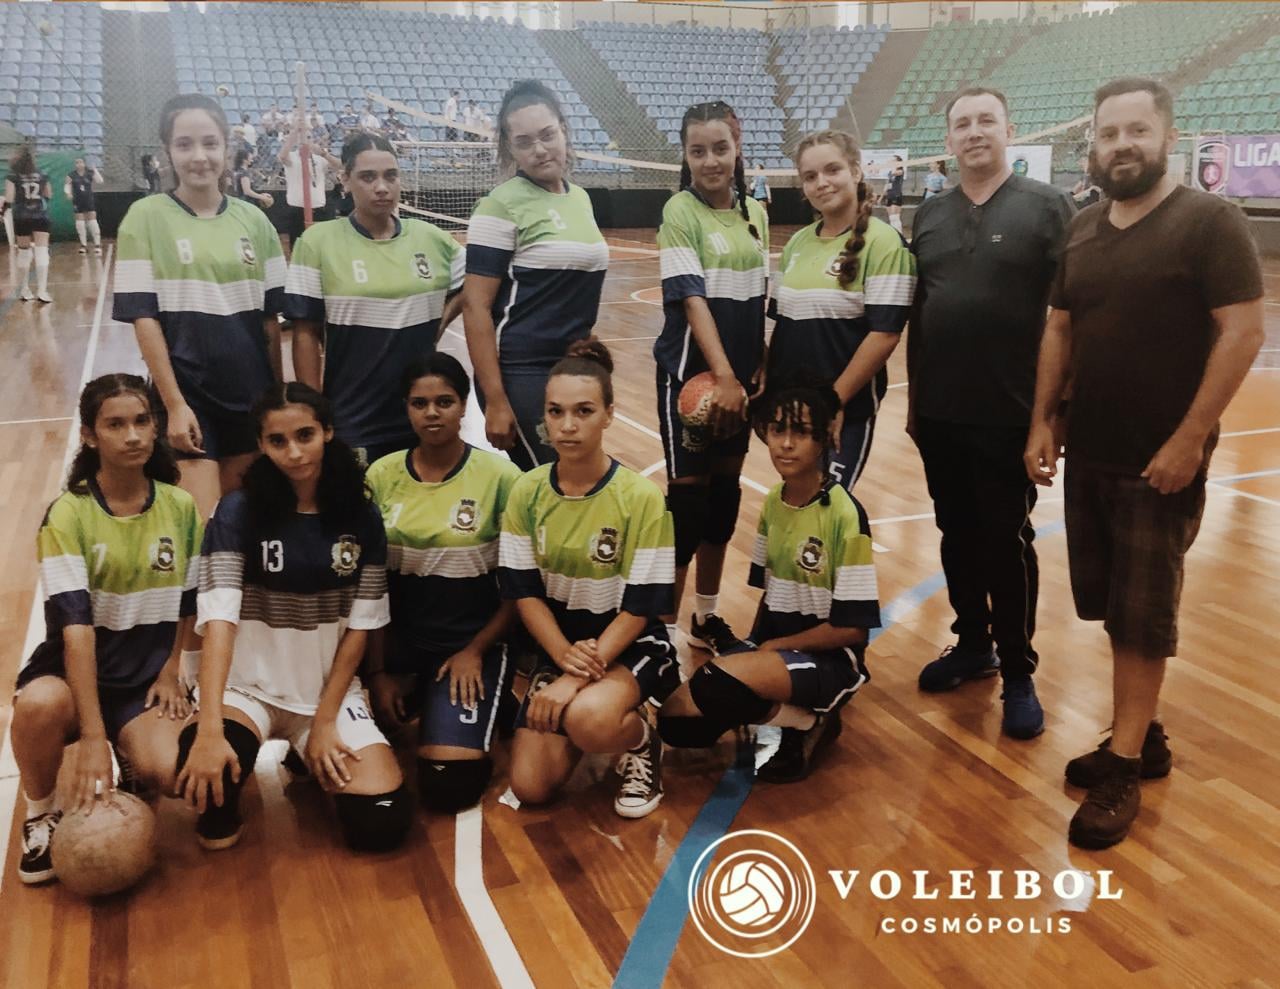 Equipe Valinhense de Vôlei Feminino joga nesta quinta (2) pelo Campeonato  Estadual da Federação Paulista de Voleibol - Jornal Terceira Visão